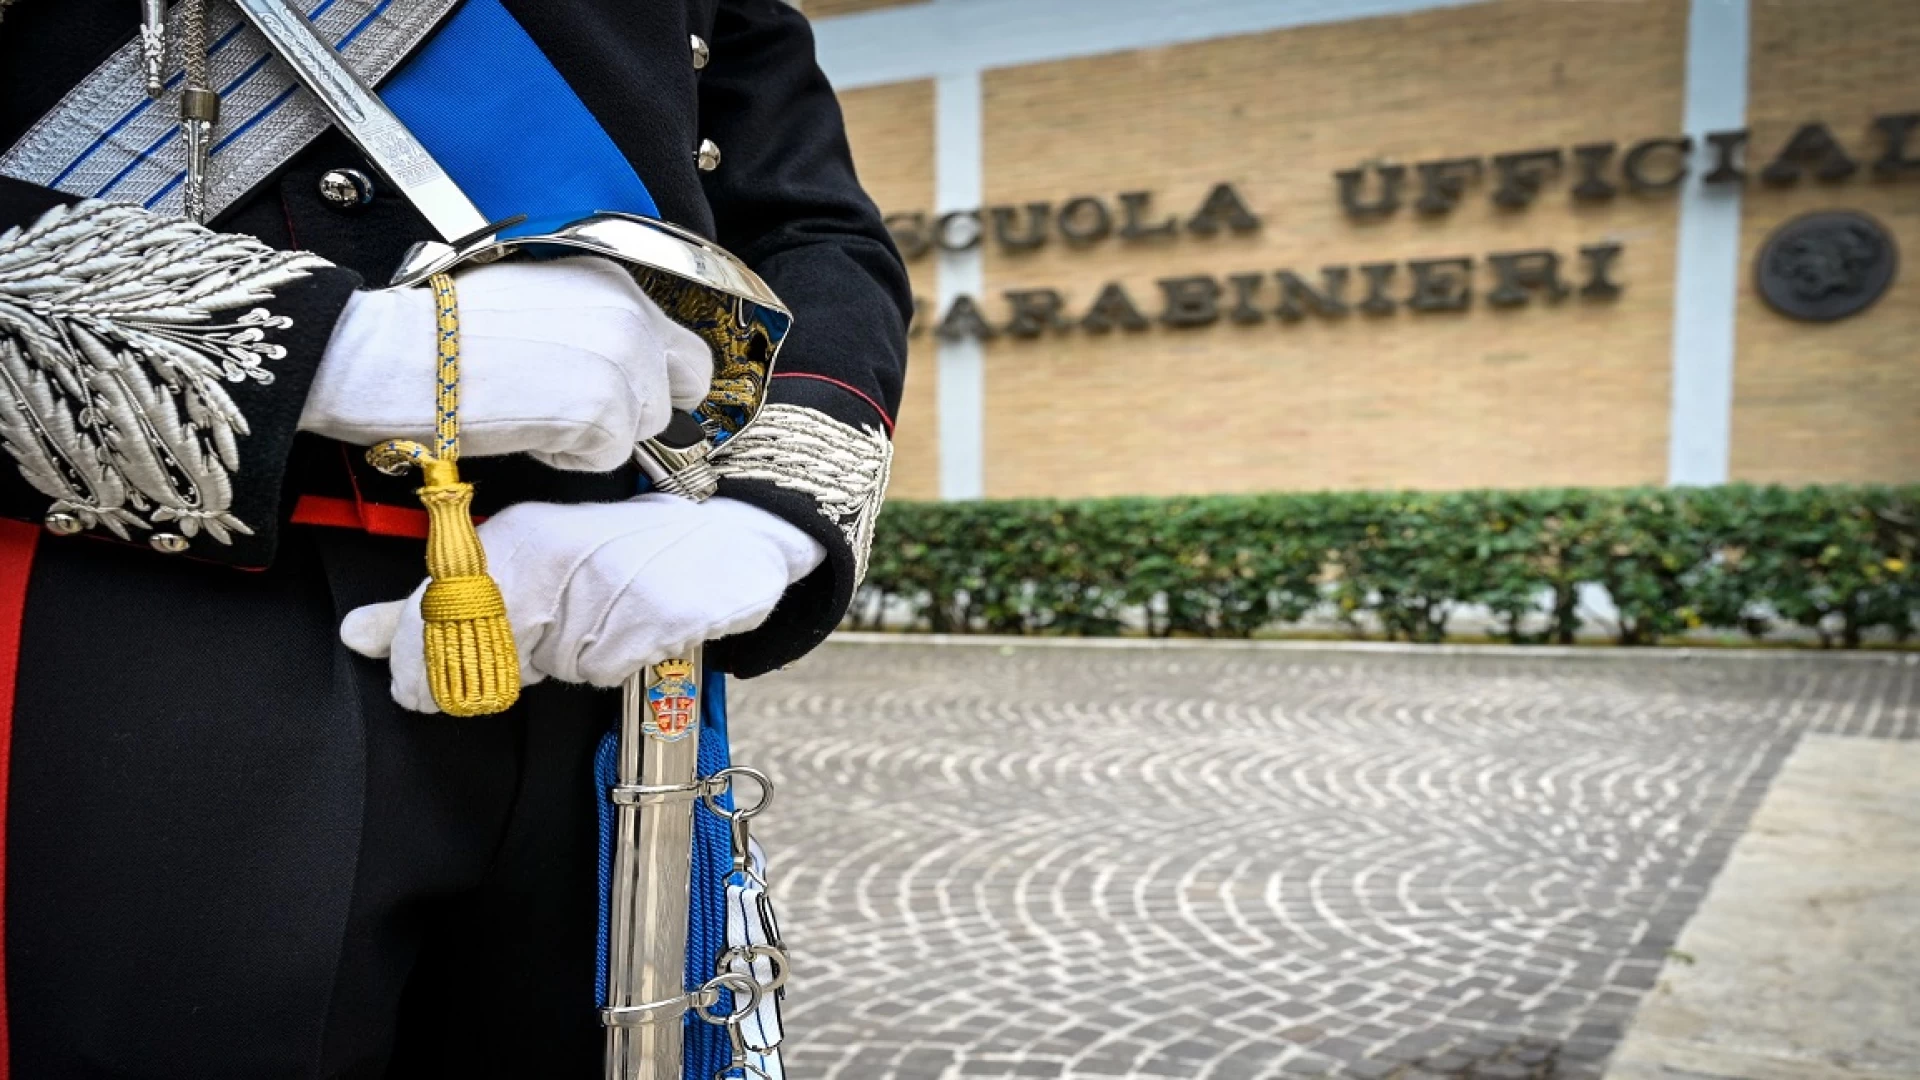 Pubblicato il bando di concorso per ufficiale del ruolo tecnico dell’Arma dei Carabinieri.